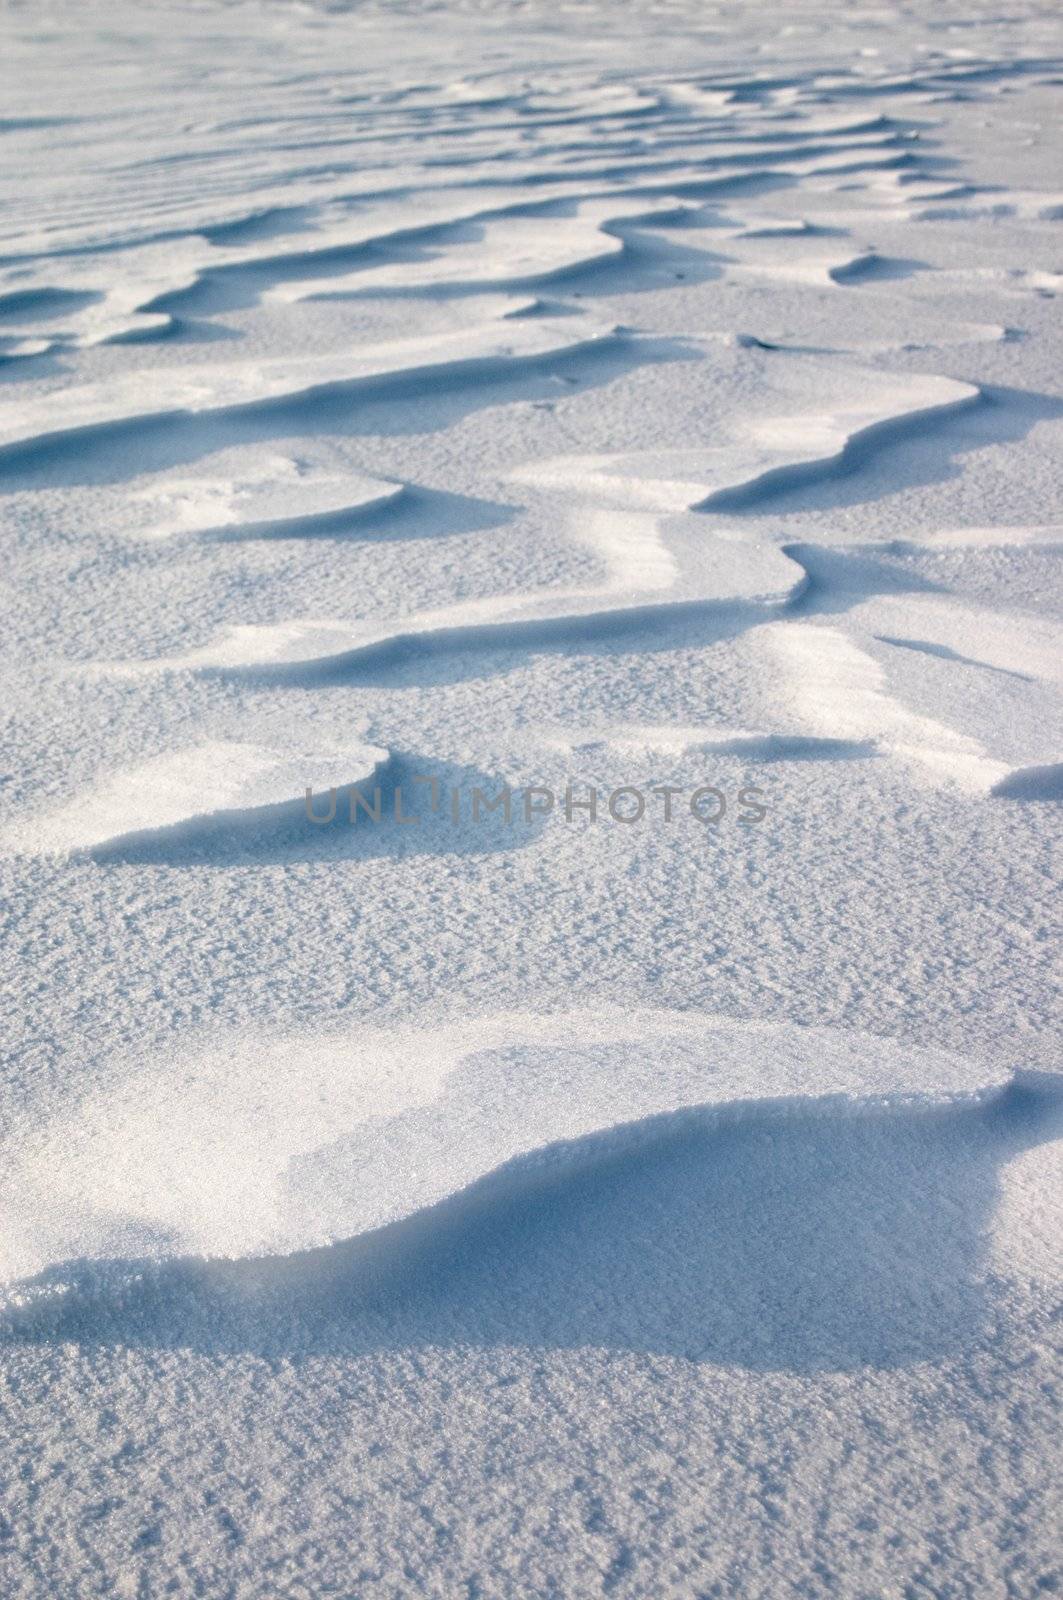 Snow erosion on the snow plain